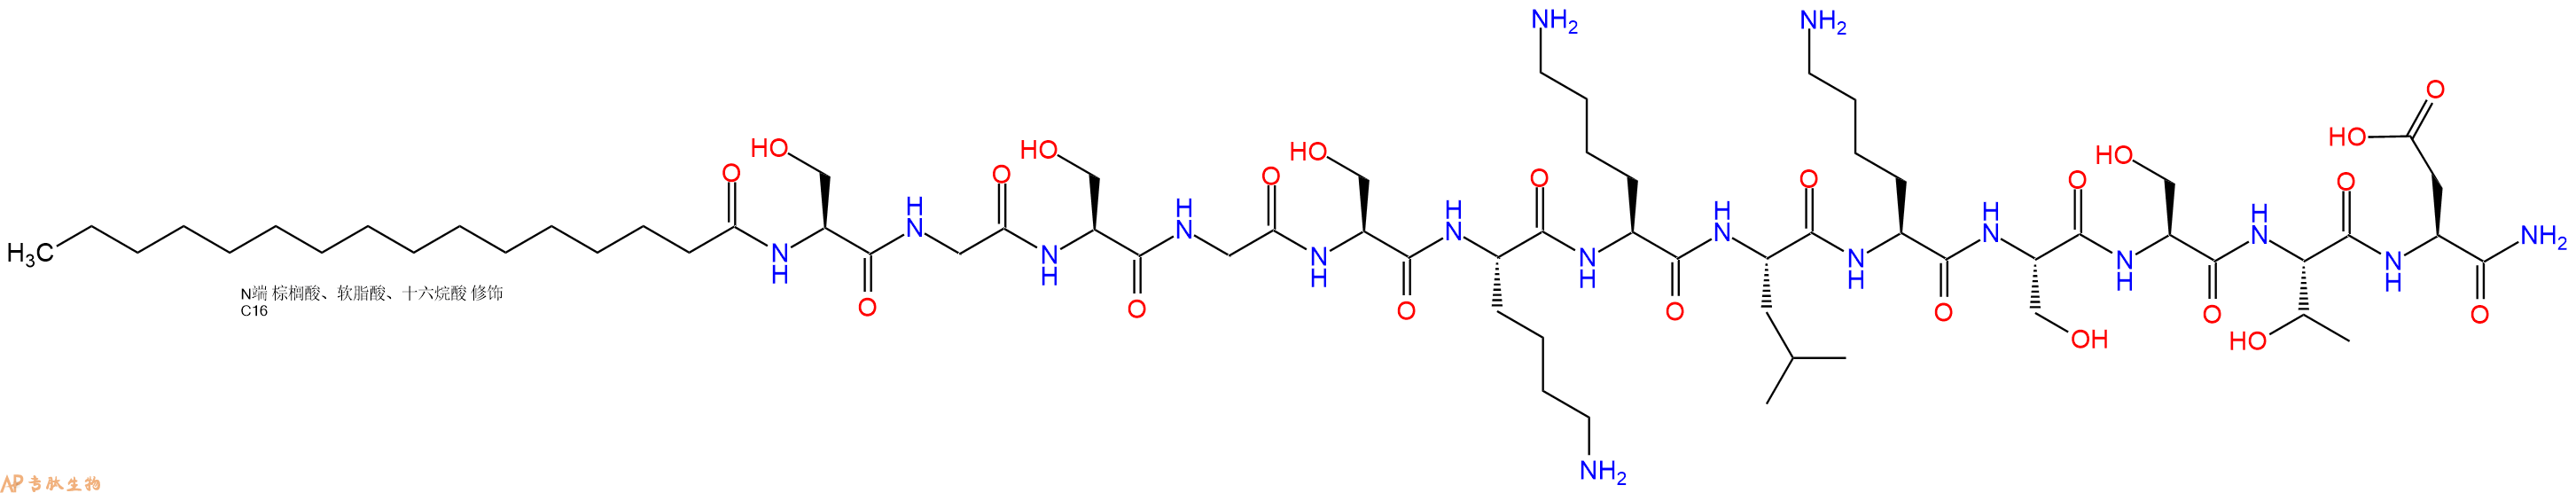 专肽生物产品PAL-Ser-Gly-Ser-Gly-Ser-Lys-Lys-Leu-Lys-Ser-Ser-Th